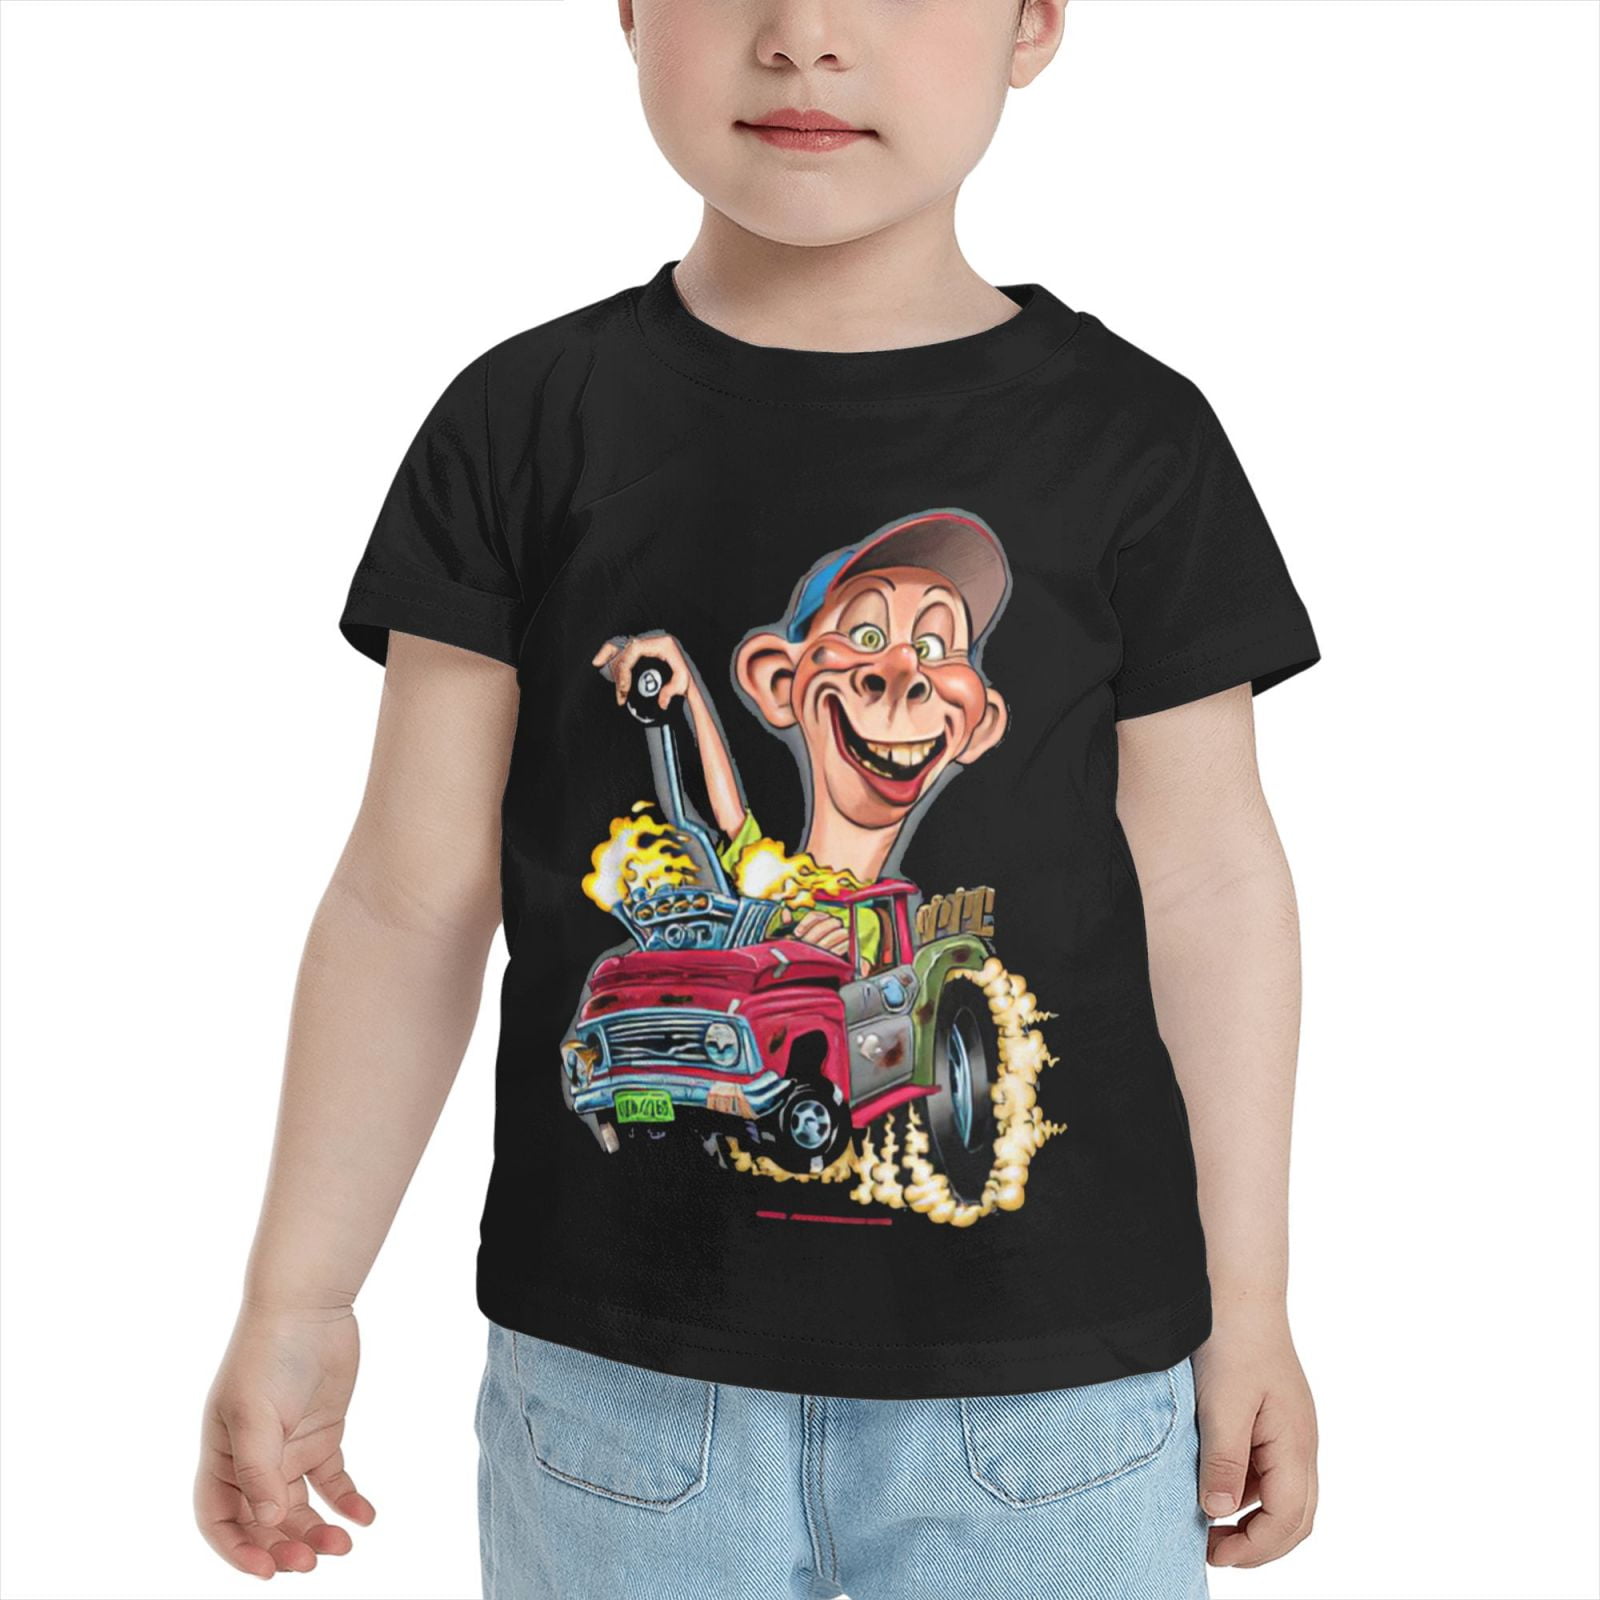 Jeff Dunham - Bubba J Hot Rod Up T-Shirt - Walmart.com